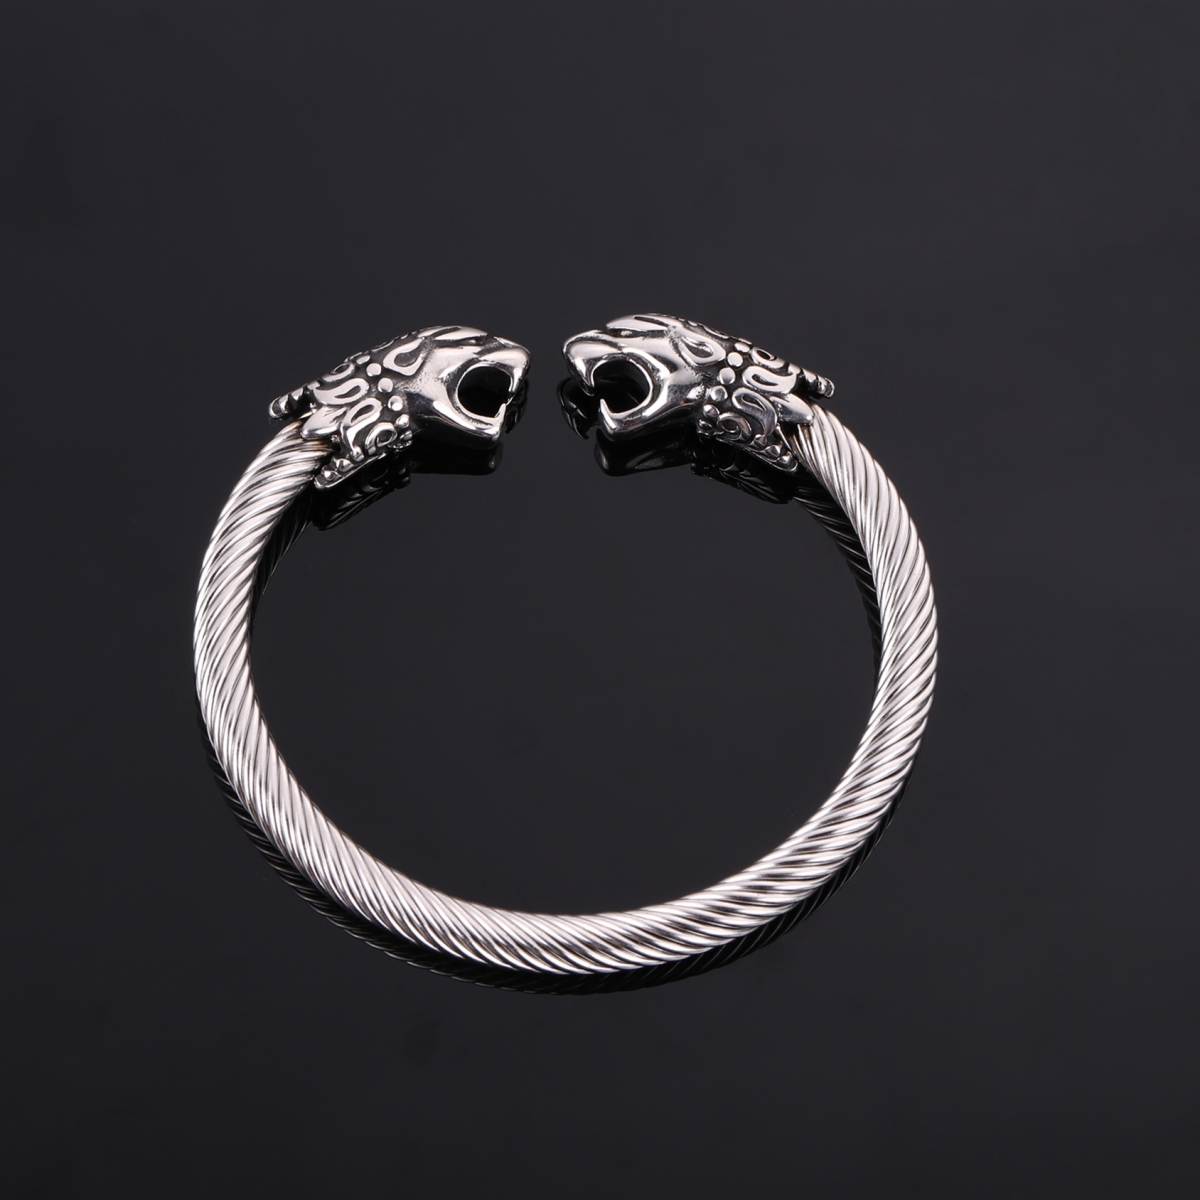 Viking wrist ring-NORSECOLLECTION- Viking Jewelry,Viking Necklace,Viking Bracelet,Viking Rings,Viking Mugs,Viking Accessories,Viking Crafts